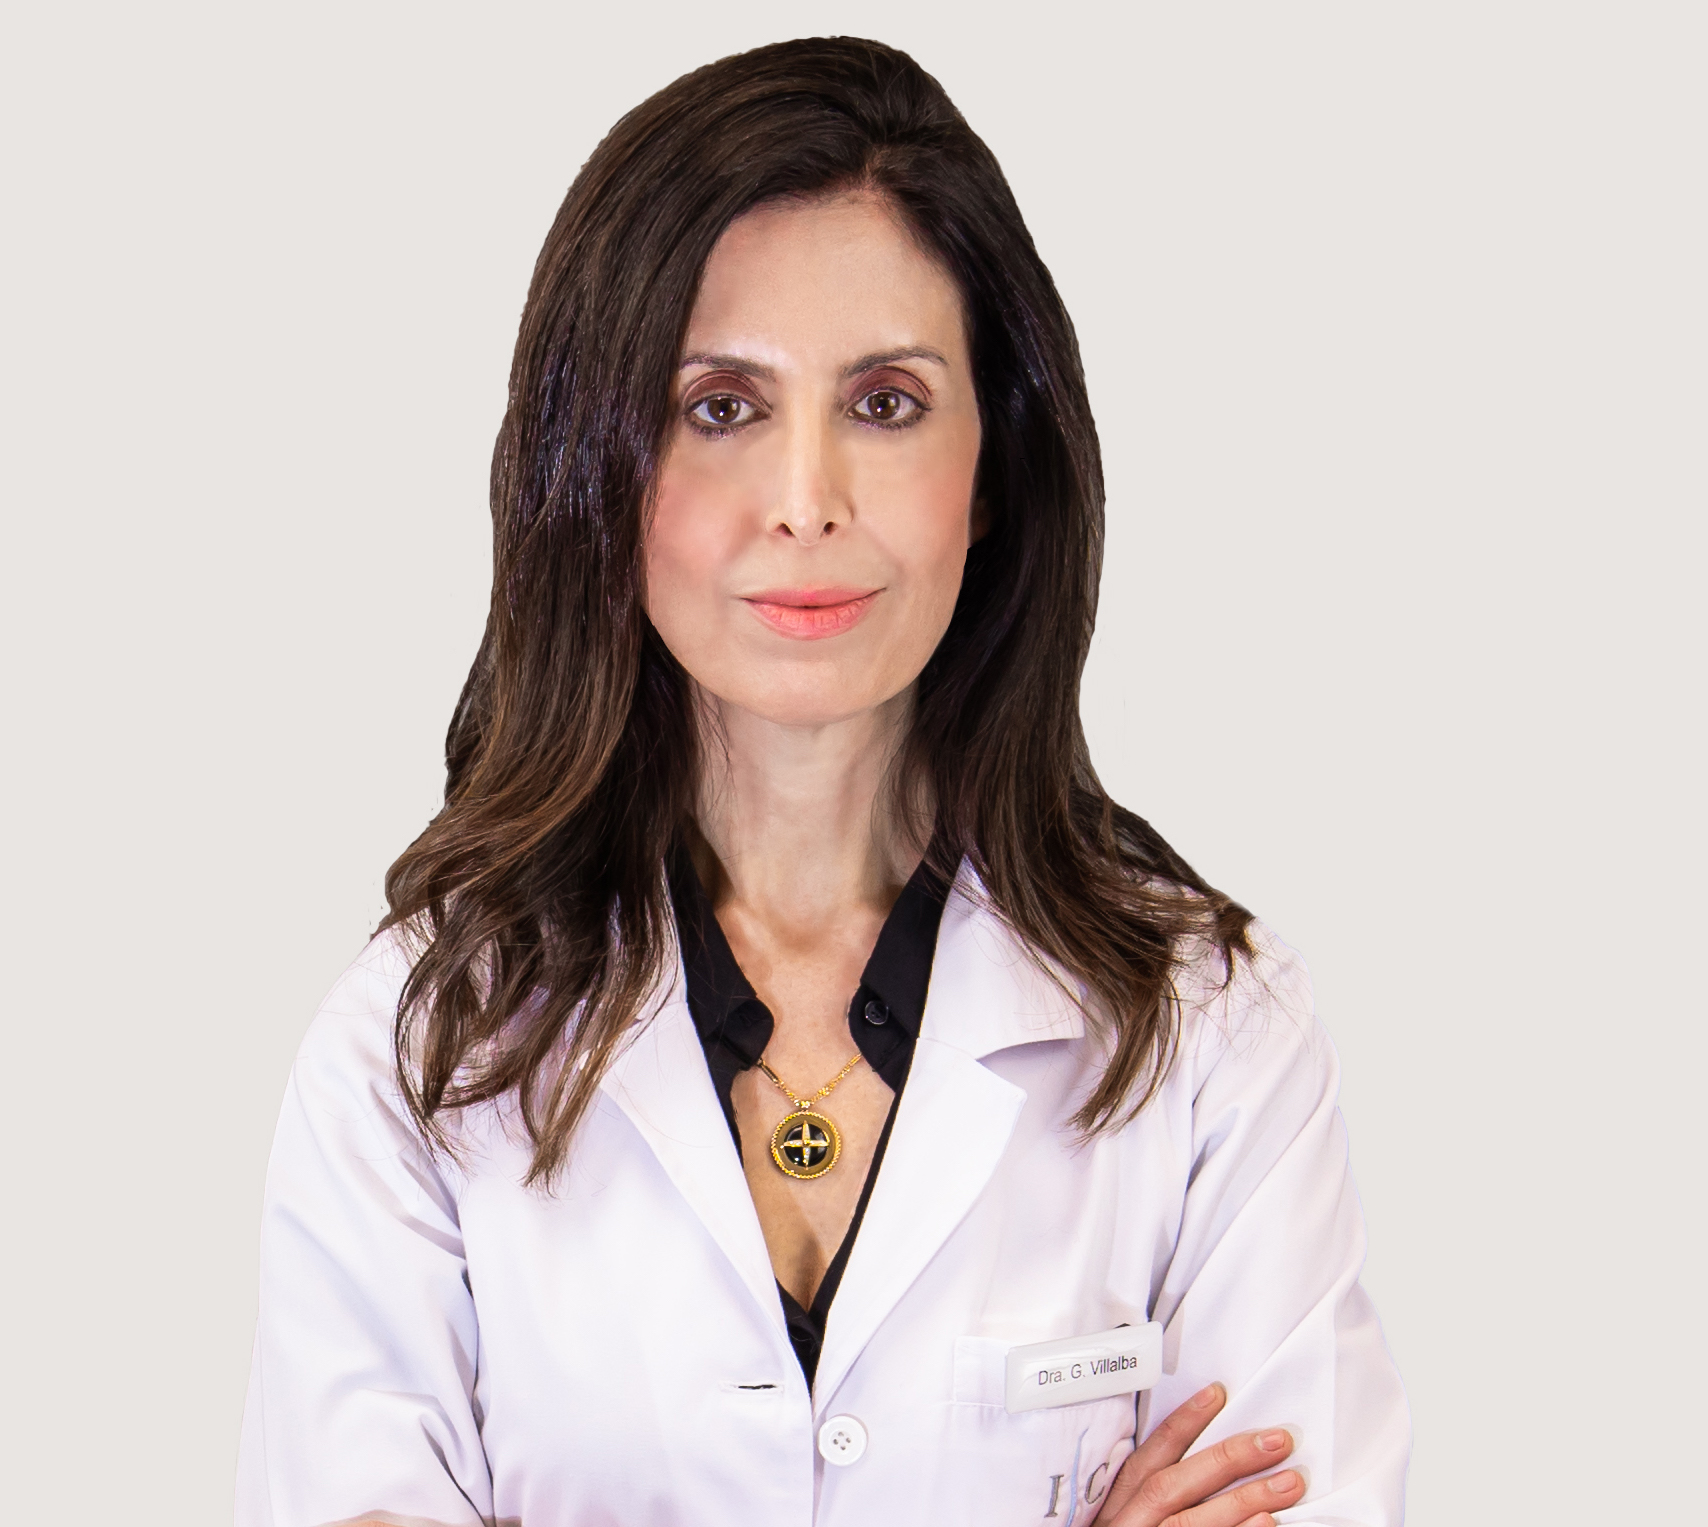 Dr. Gloria Villalba Martínez